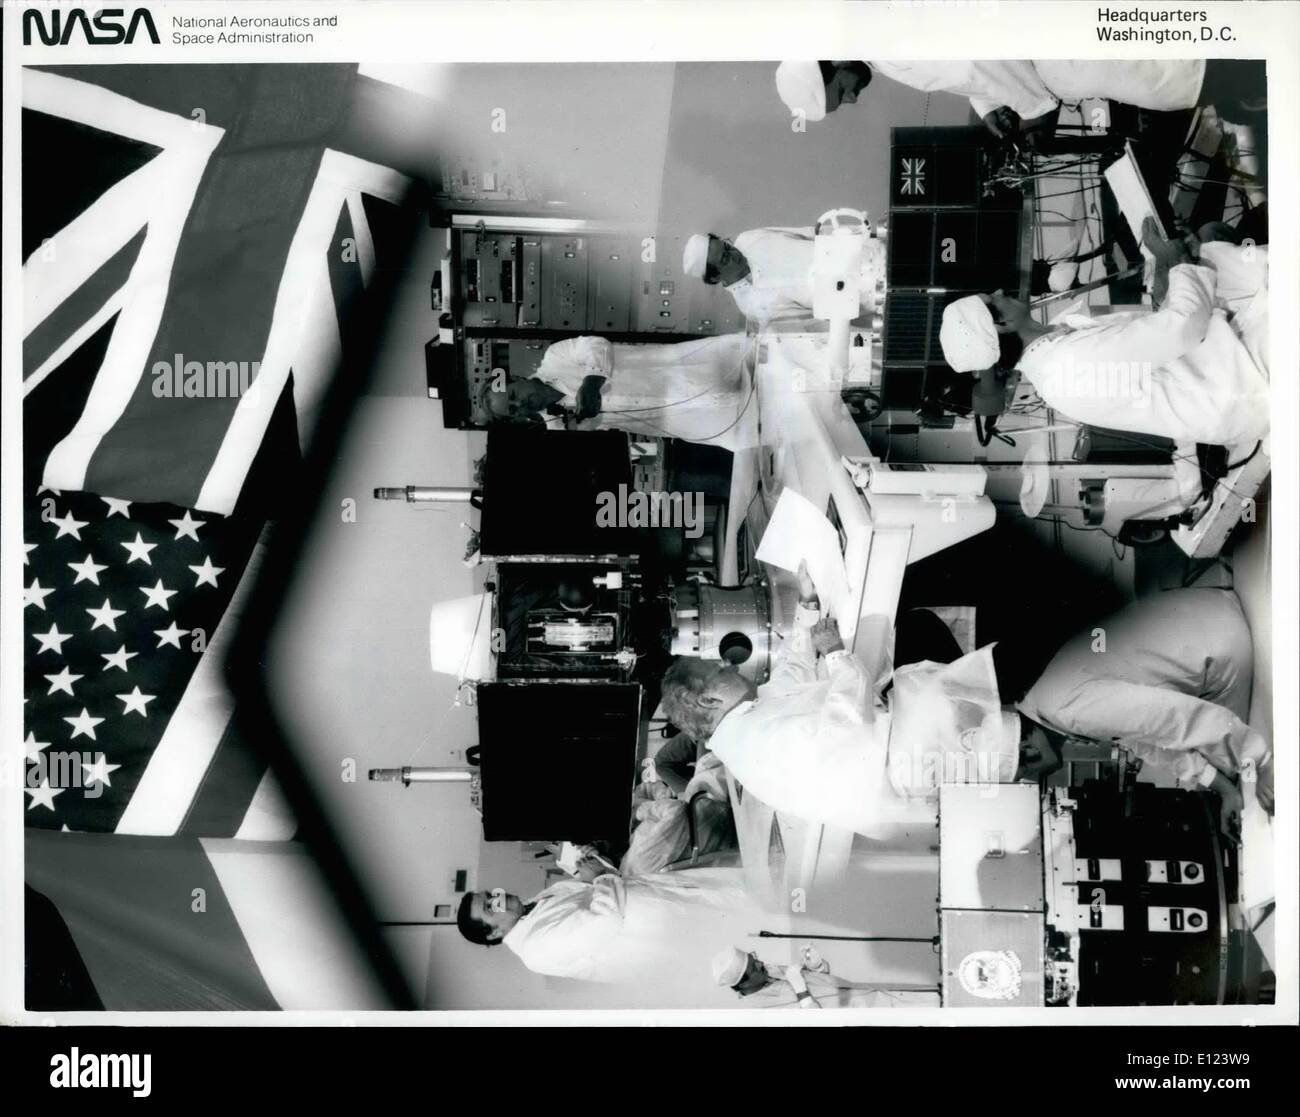 7. Juli 1984 eingerahmt - Kennedy Space Center, Florida, - die Flaggen der Nationen, die Teilnahme an der internationalen Mission aktiv Magnetospheric Particle Tracer Explorer (AMPTE), dieses Kollegium der Bilder zeigt die drei Raumschiffe im Gebäude am KSC SAEF-2 getestet. Im Uhrzeigersinn von unten links sind die Ionen-Release Modul (Bundesrepublik Westdeutschland); Geladenen Zusammensetzung erforscht (Vereinigte Staaten); und das Vereinigte Königreich Subsatellite (Großbritannien) Stockfoto